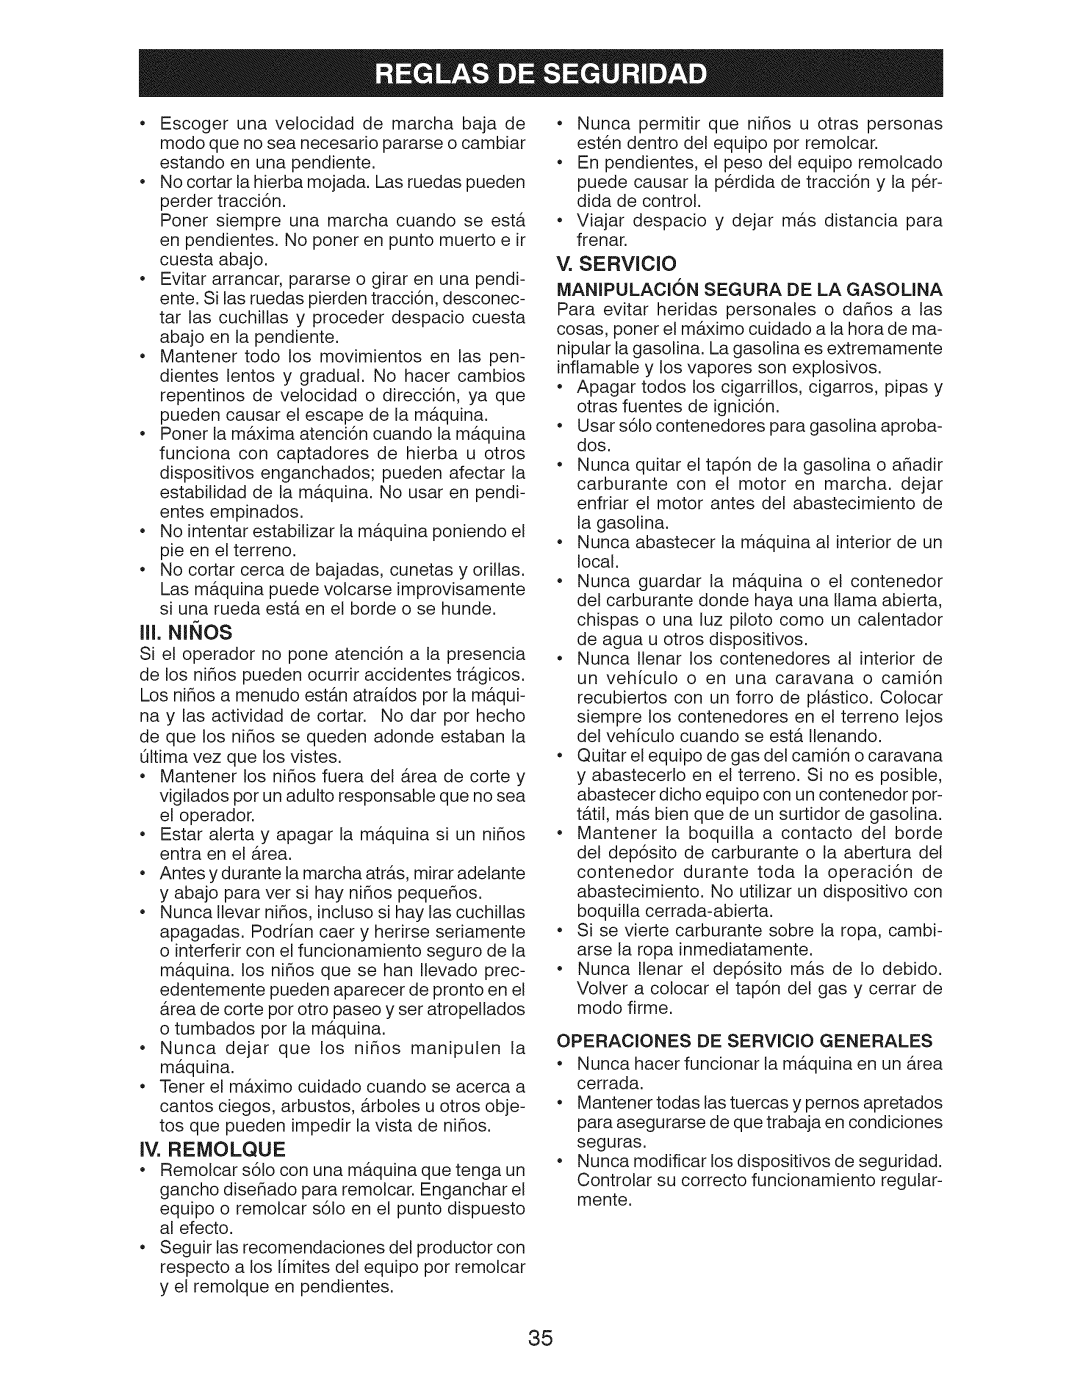 Craftsman 917.289244 owner manual III, Ninos, IV. Remolque, Operaciones DE Servicio Generales 